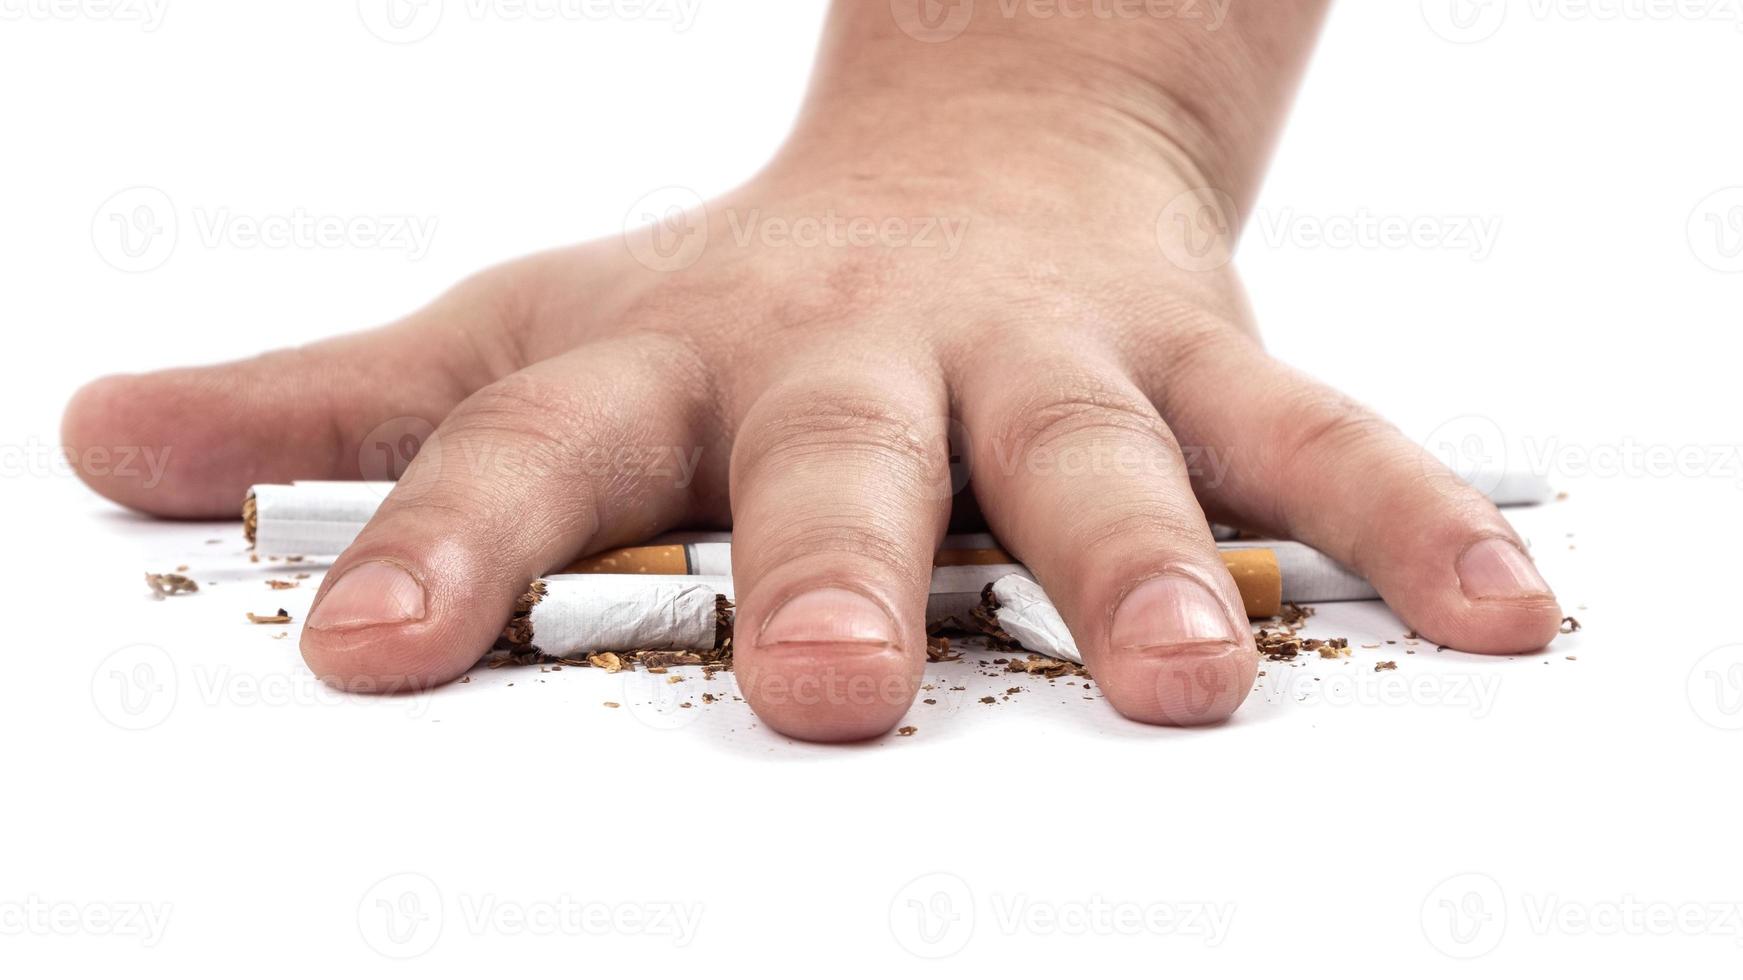 roker verplettert een sigaret met hand op witte achtergrond foto